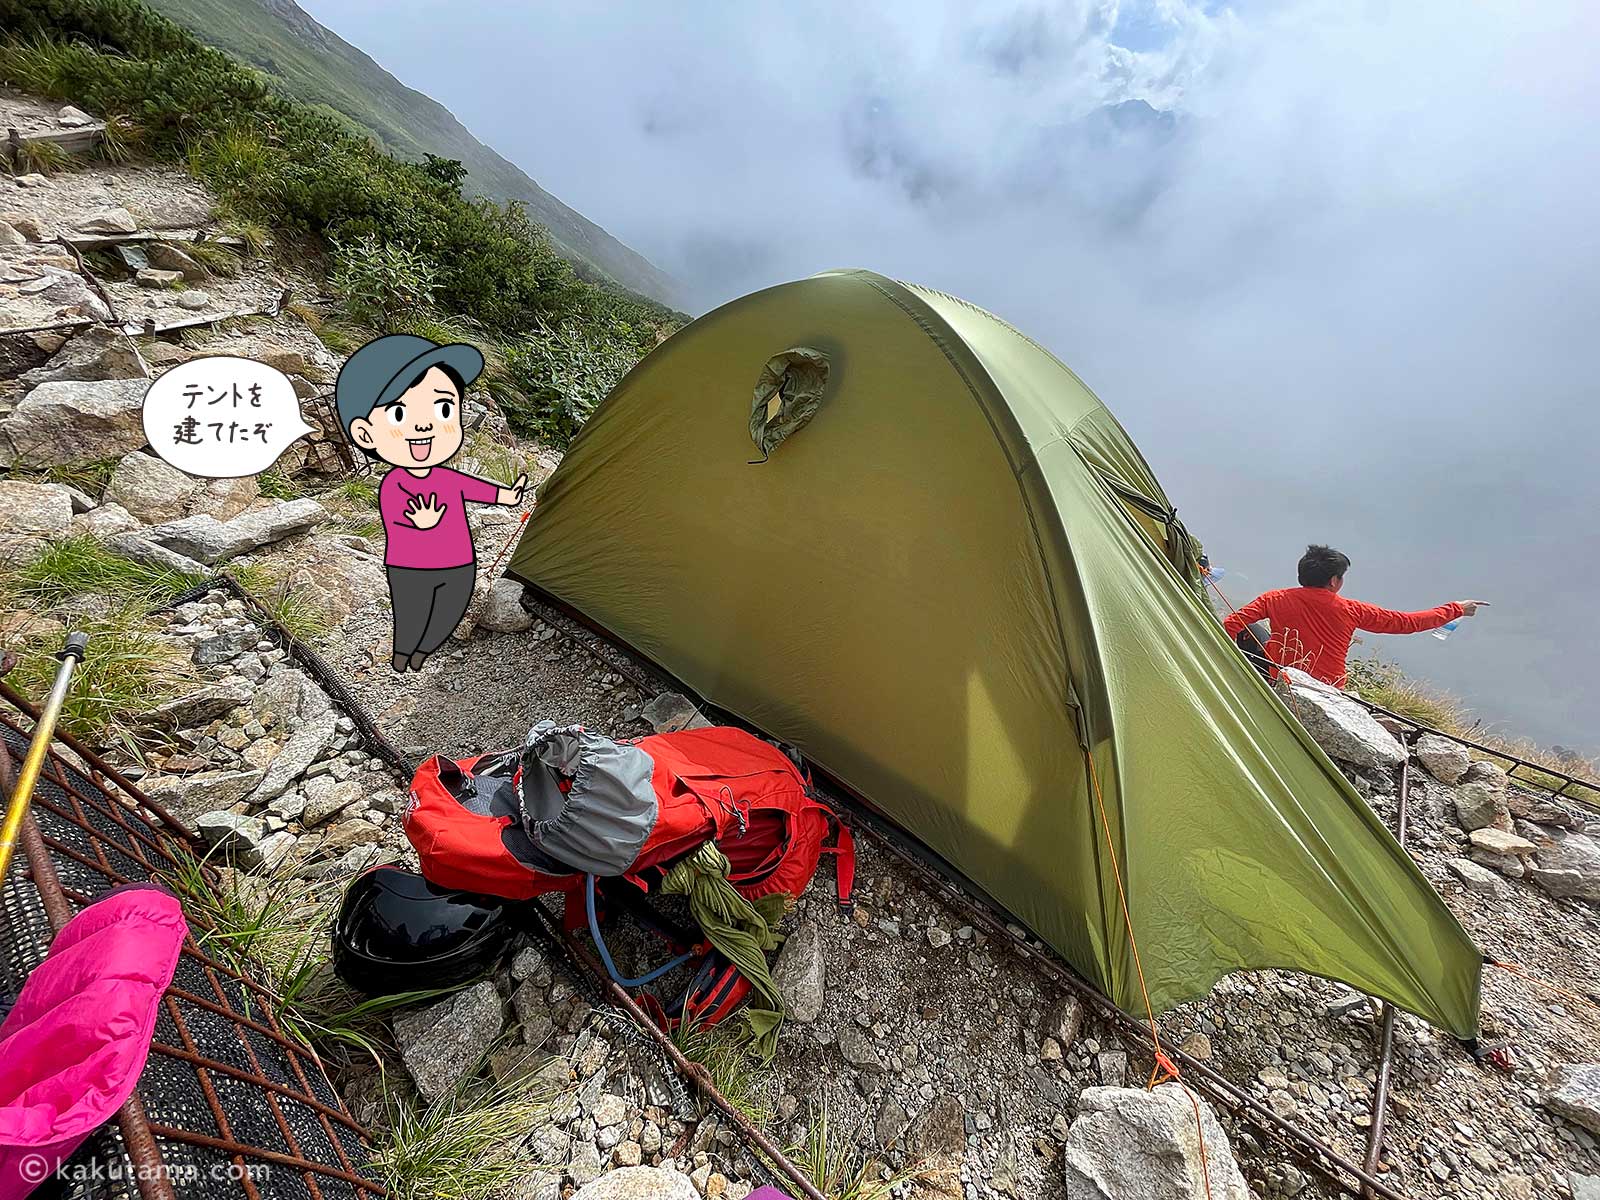 唐松岳頂上山荘のテント場にテントを張った